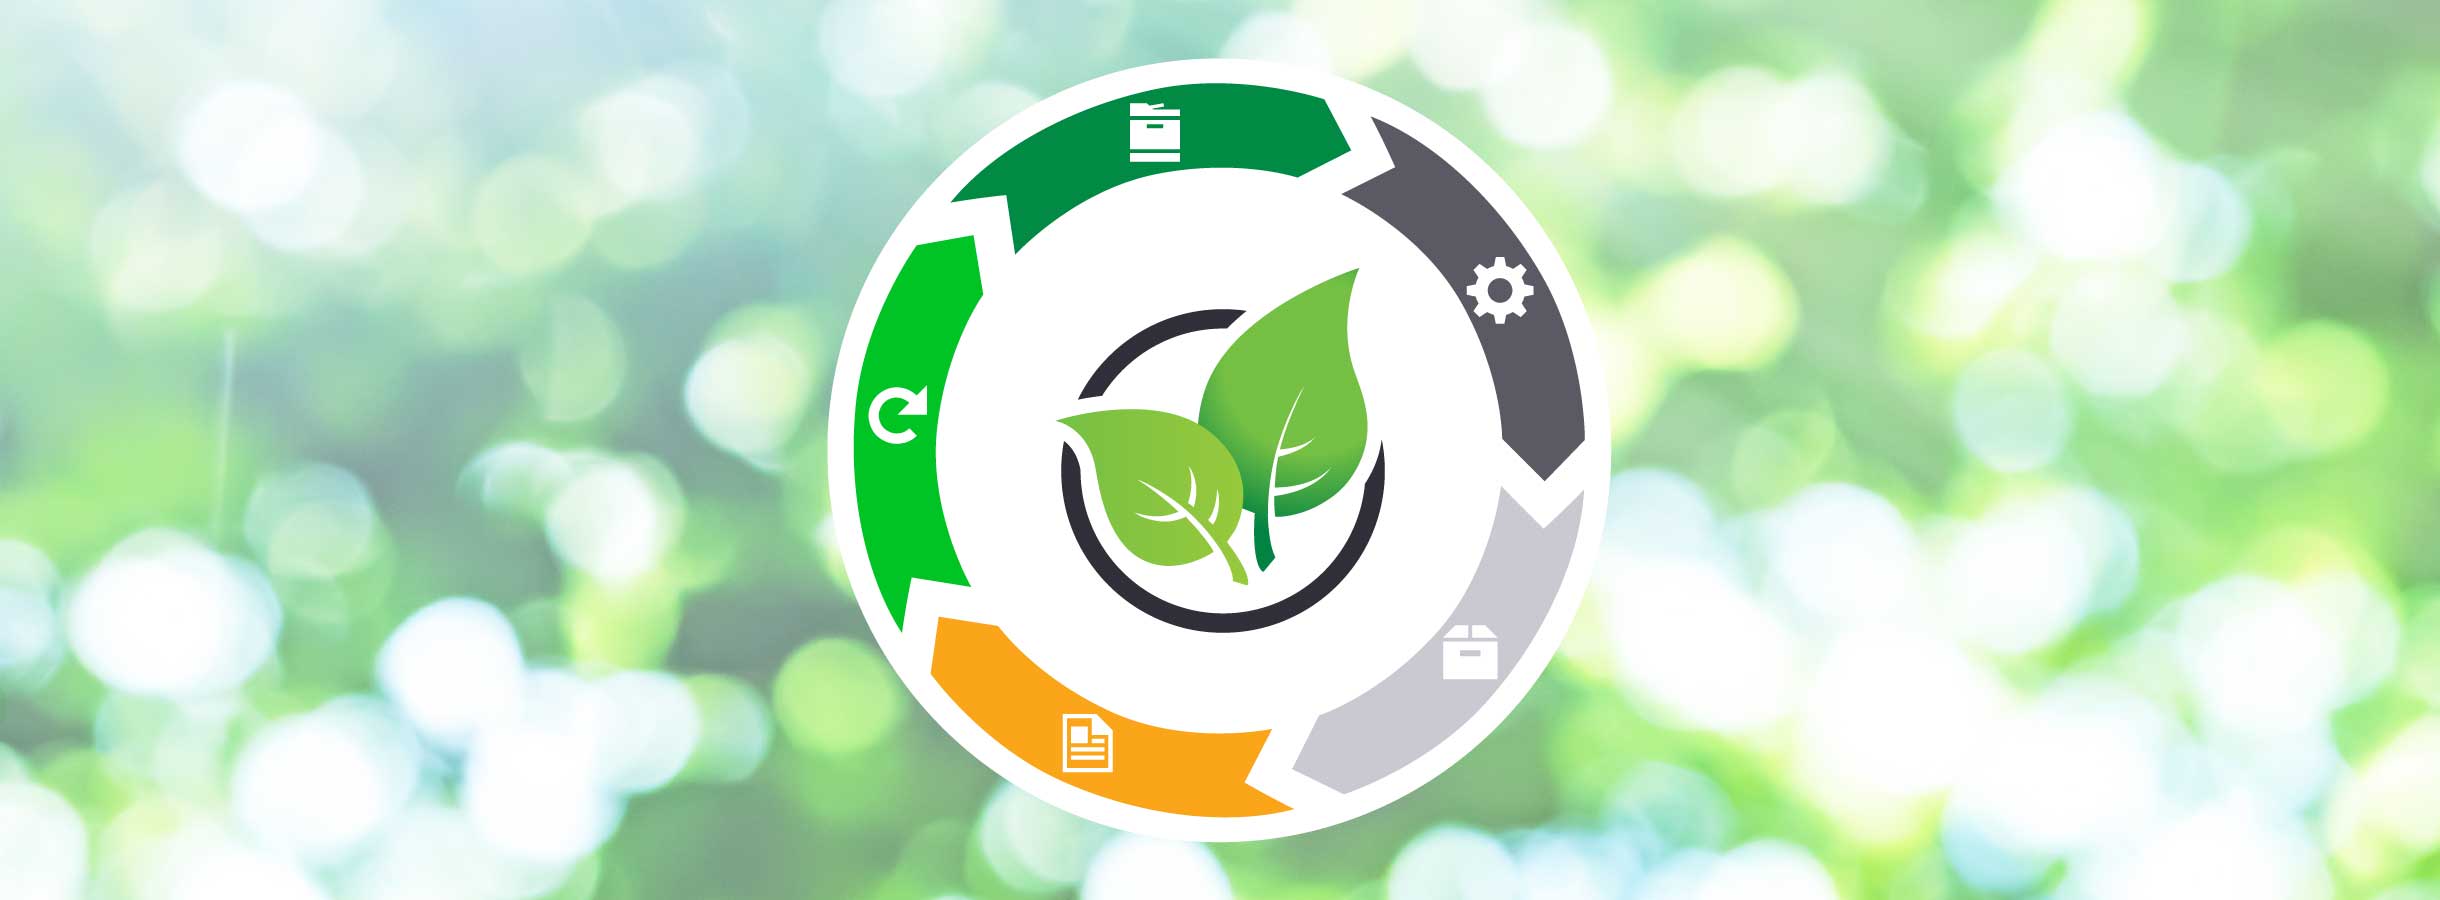 Ilustración del diseño circular de consumibles sostenibles de Lexmark.